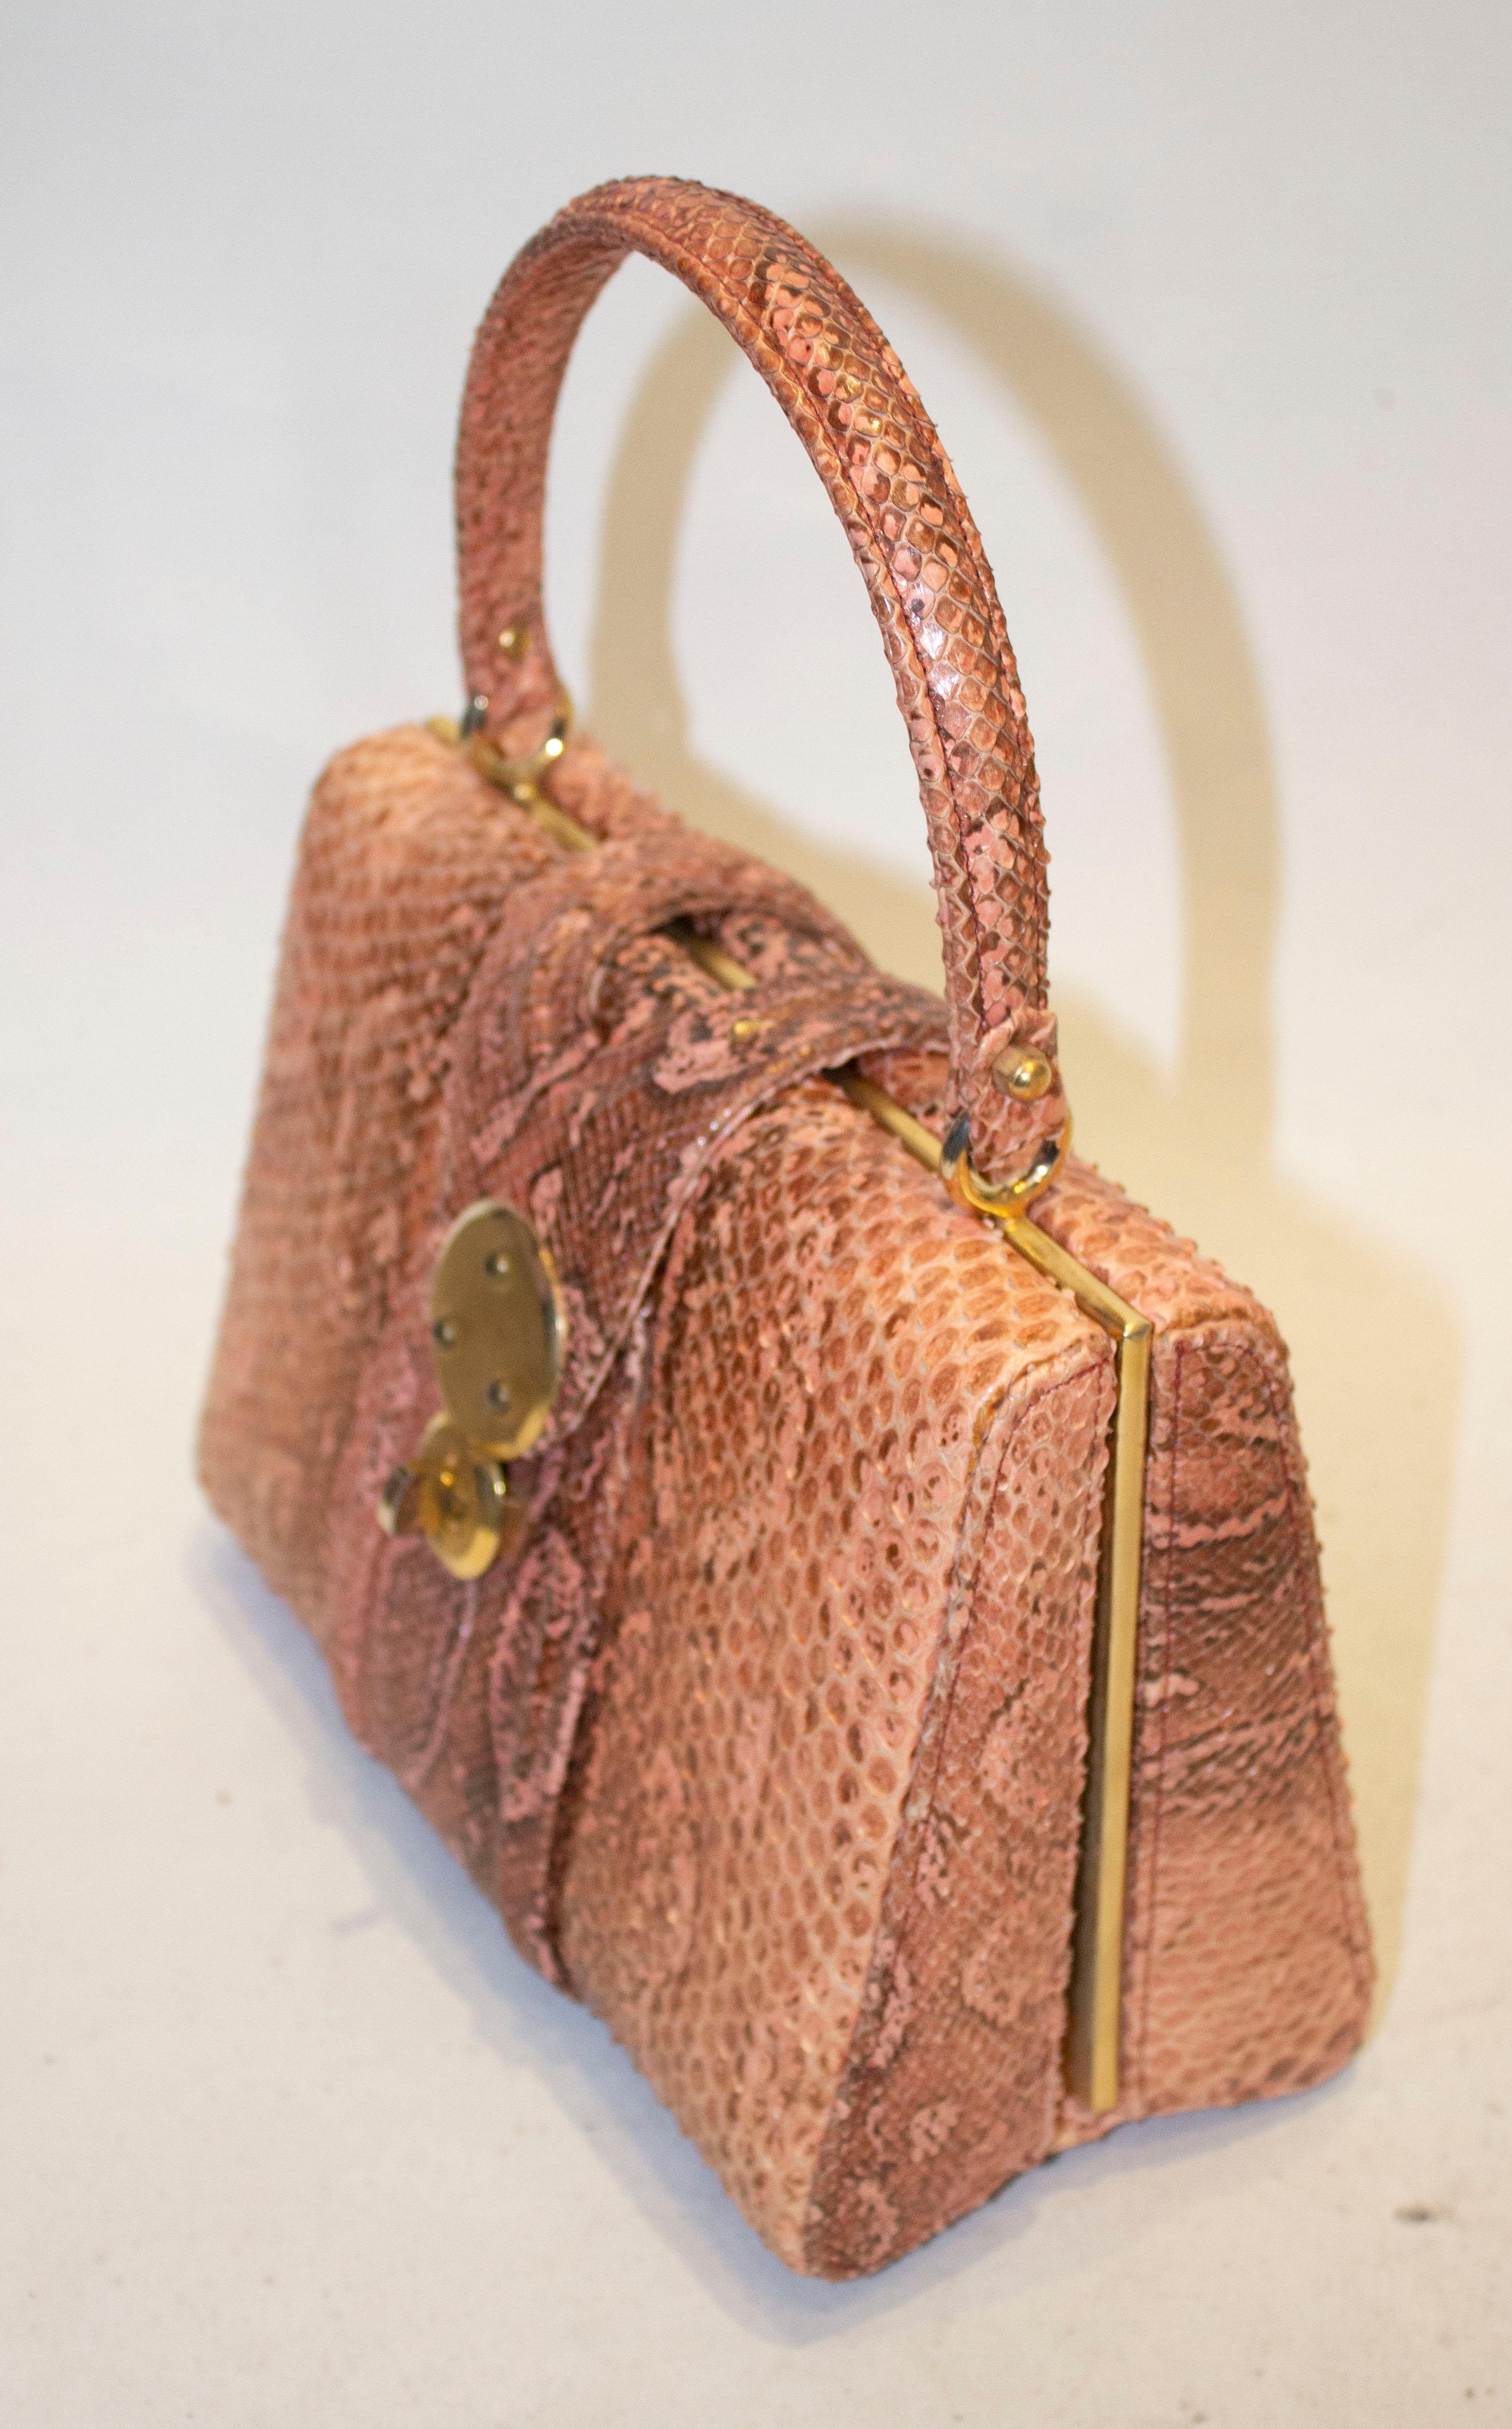 Un magnifique sac à main vintage en peau de serpent.  Ce sac n'est pas seulement d'une belle couleur, il est aussi suffisamment grand pour contenir les objets essentiels d'aujourd'hui.  Il a une ouverture à rabat avec un fermoir, et à l'intérieur il